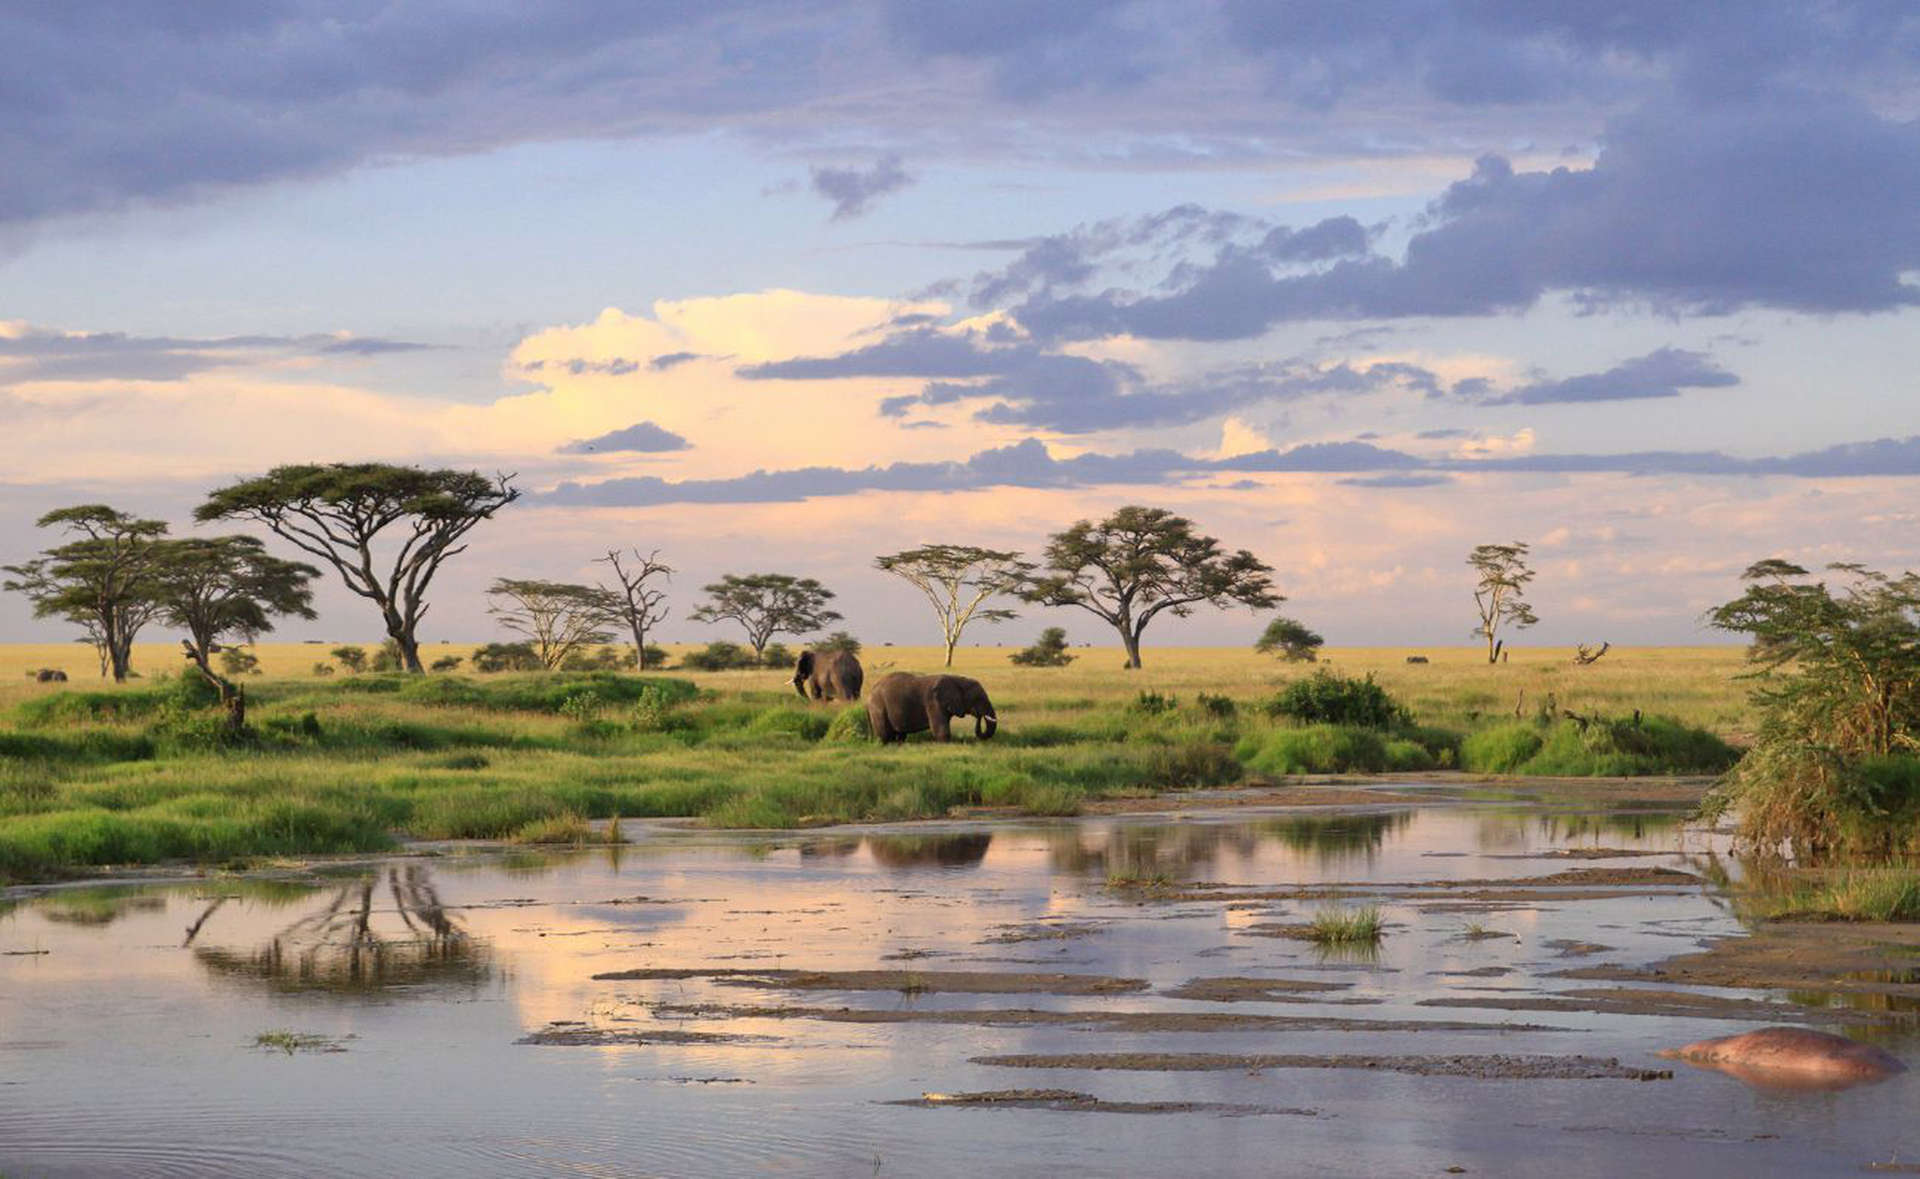 Un safari a gennaio in Tanzania non vi lascerà di sicuro indifferenti